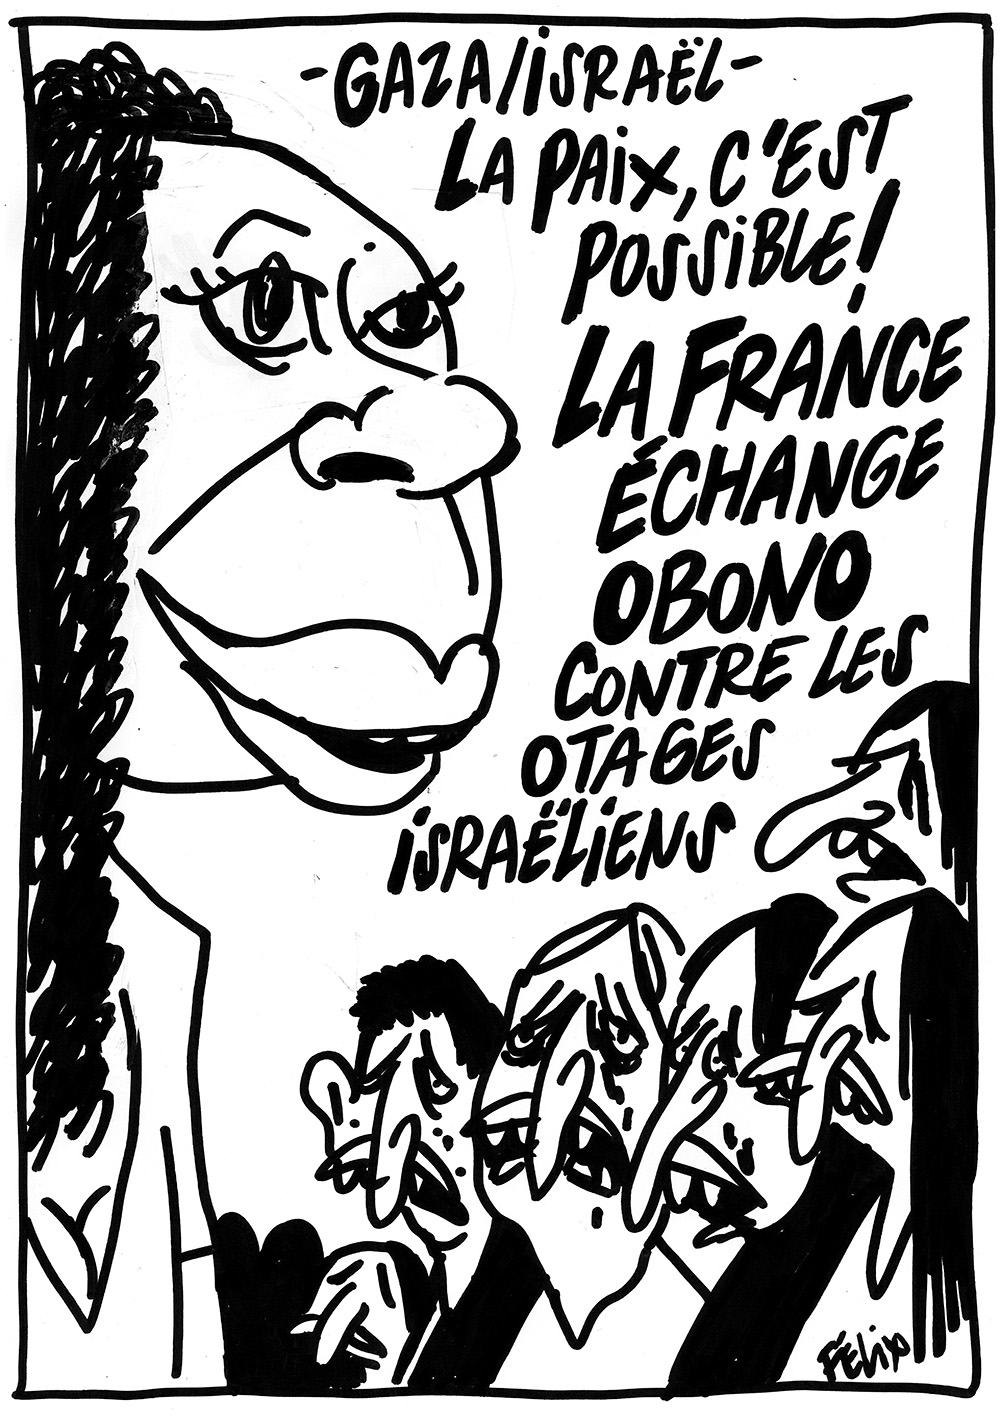 Ce dessin de Charlie Hebdo avec la députée Danielle Obono provoquant la colère des Insoumis, qui dénoncent du "racisme et de l'antisémitisme" F8usu610